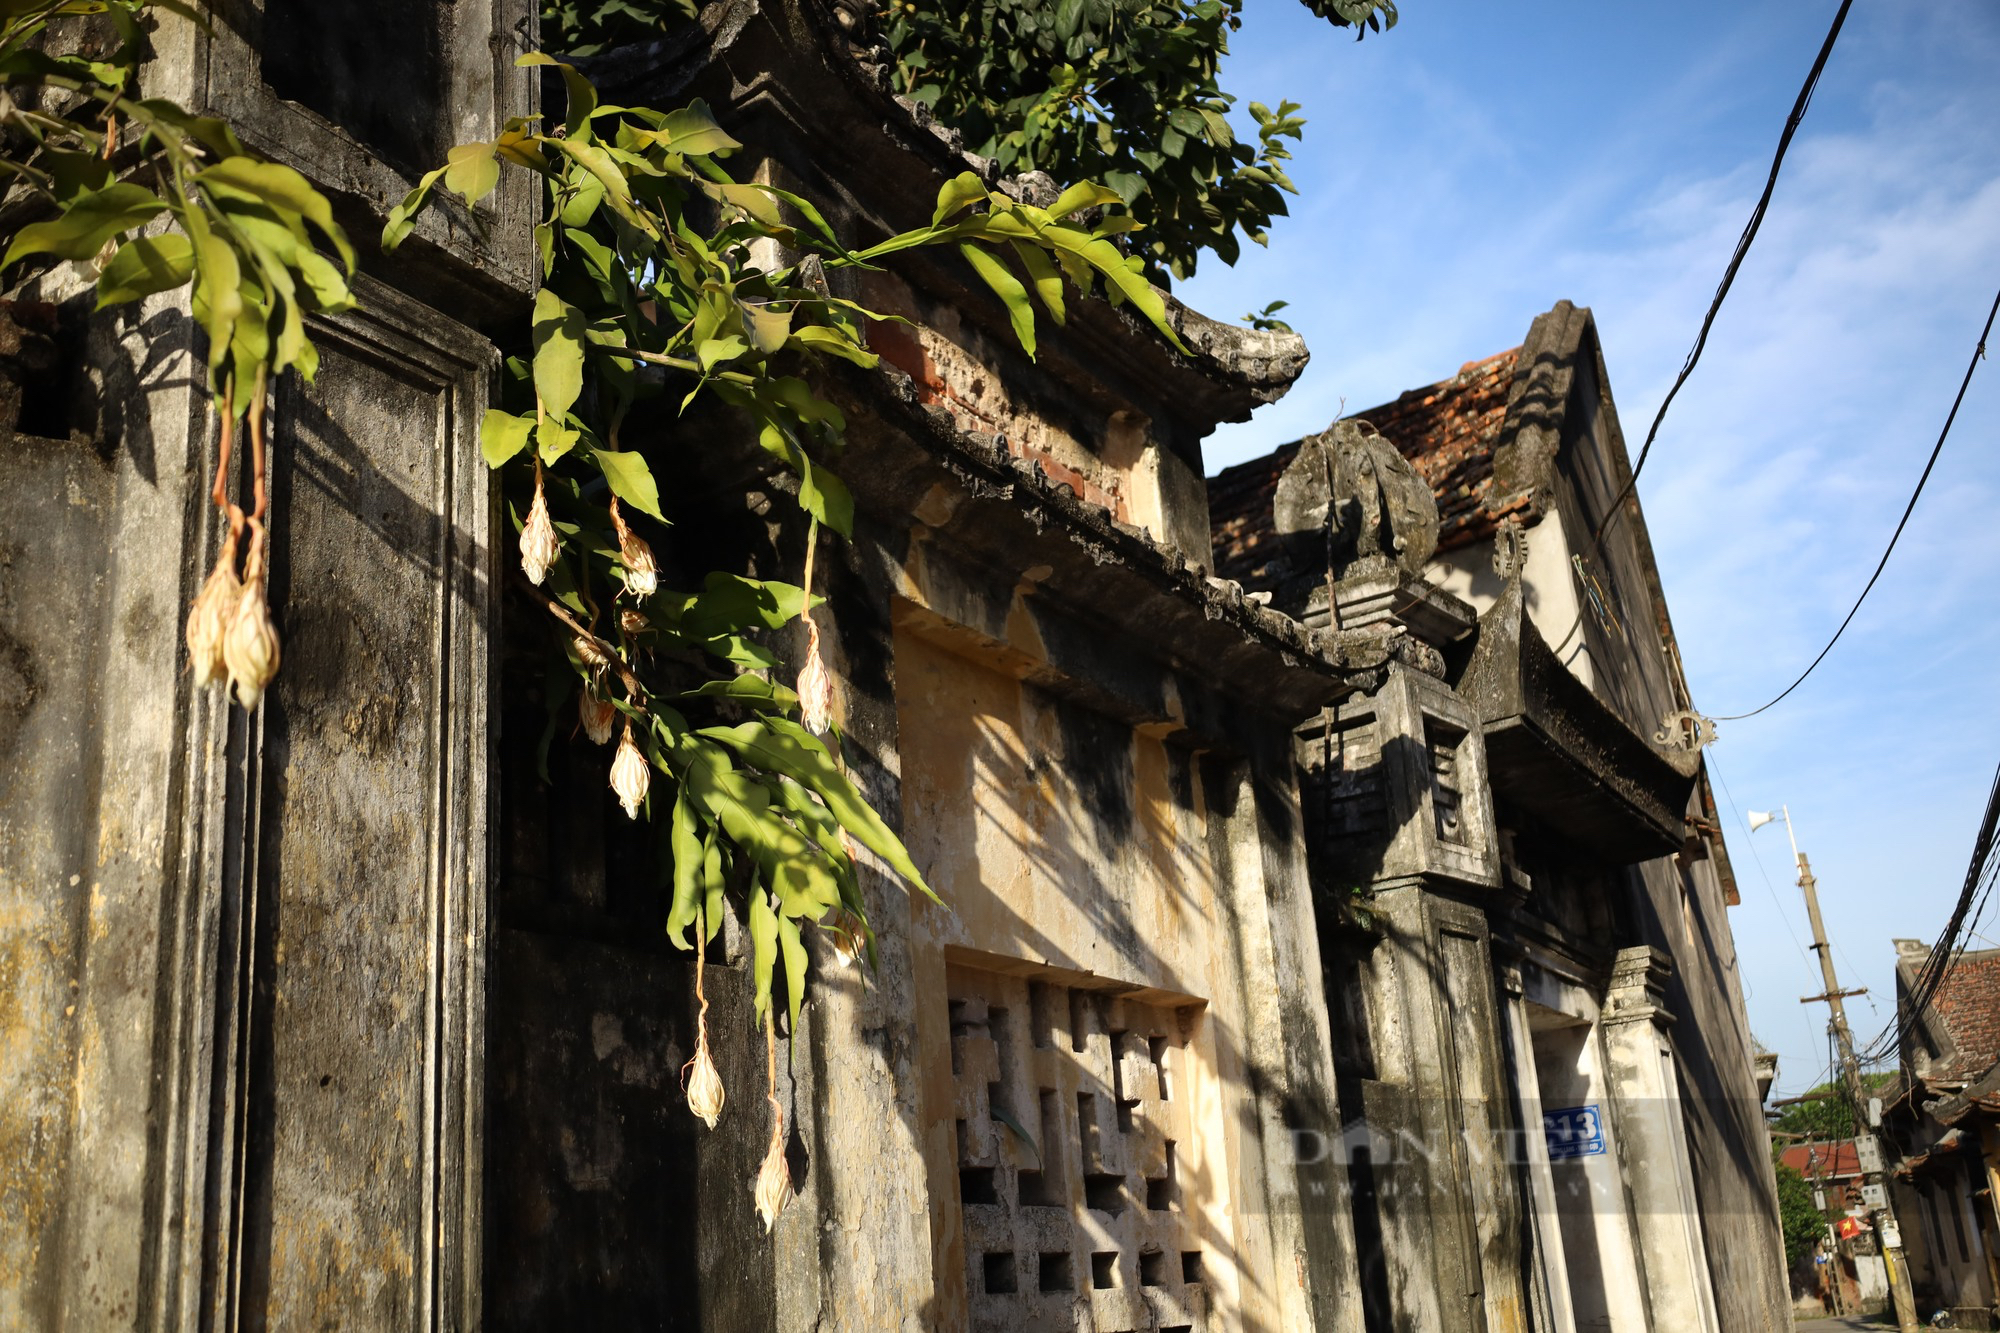 Độc đáo kiến trúc pháp cổ ở ngôi làng Cựu 500 năm tuổi ngoại thành Hà Nội - Ảnh 7.